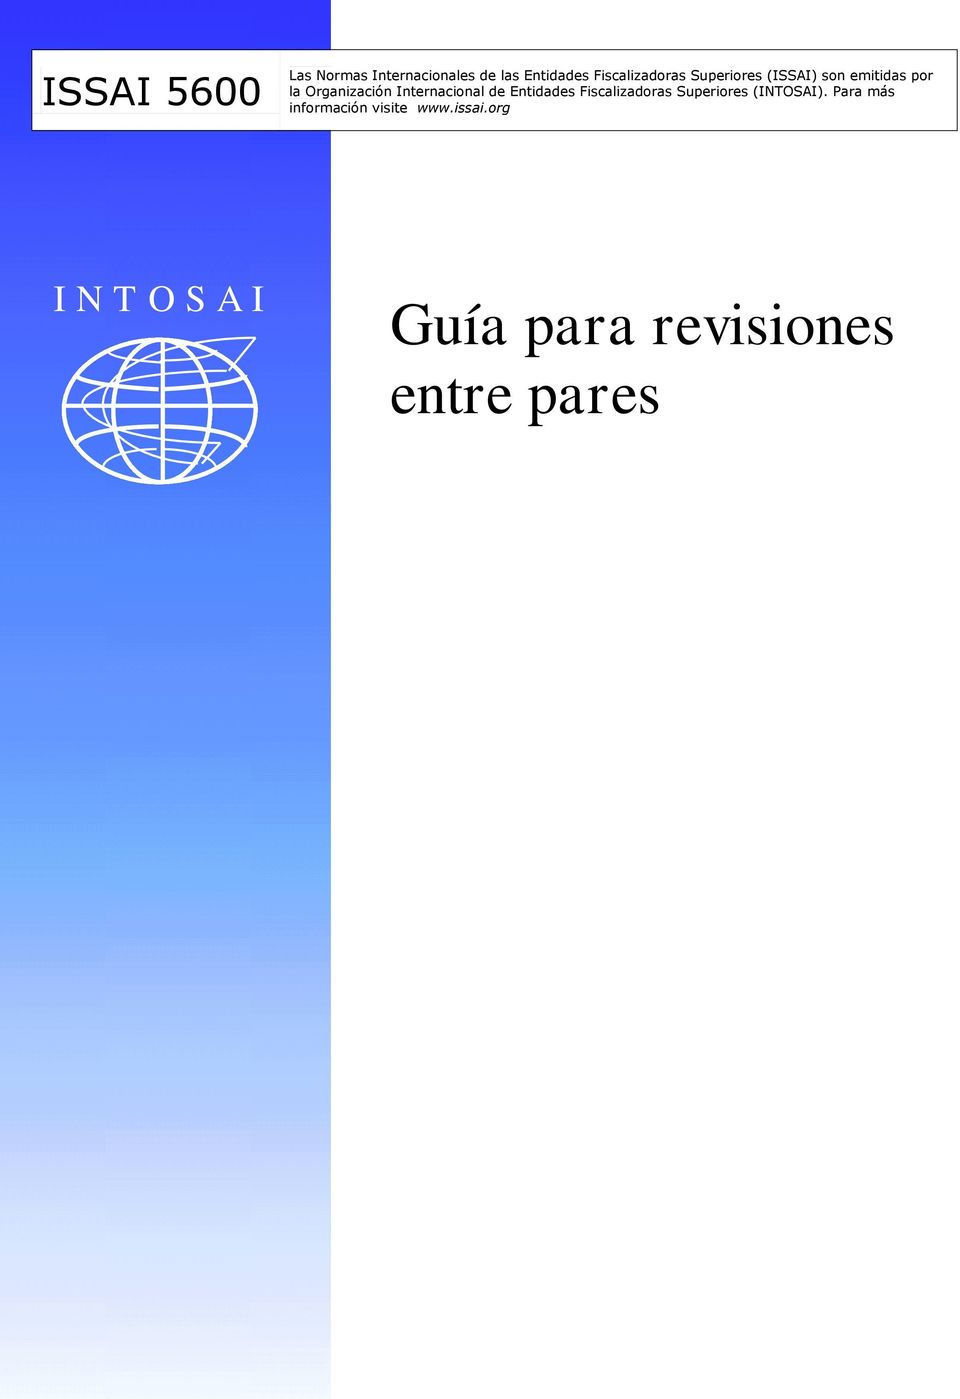 Internacional de Entidades Fiscalizadoras Superiores (INTOSAI).